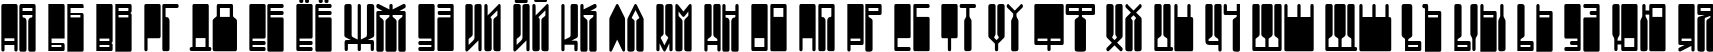 Пример написания русского алфавита шрифтом DS Vanish Medium